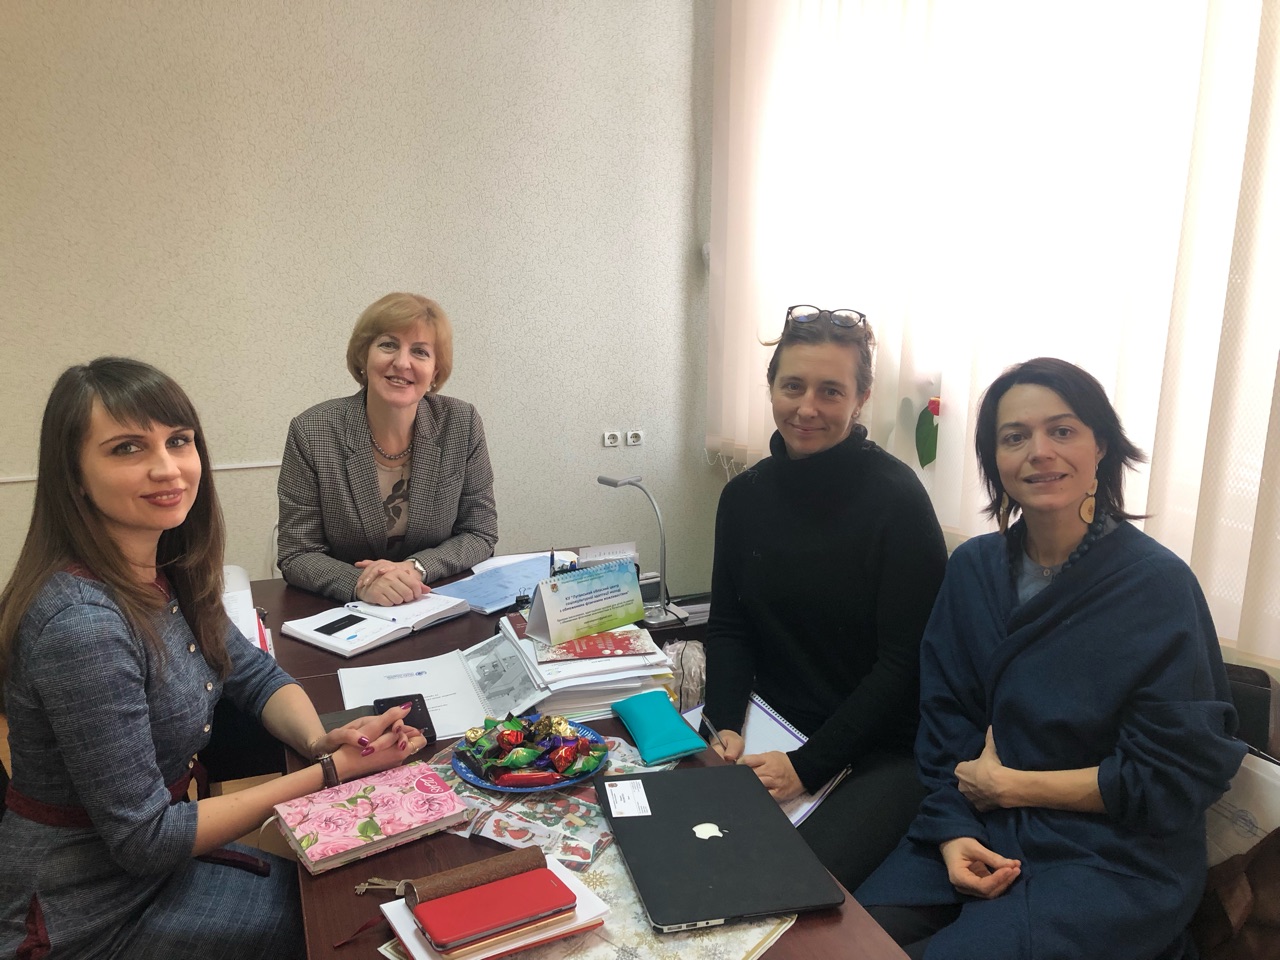 Evaluation of UNFPA,
psychosocial support
to survivors of
gender-based
violence in Eastern
Ukraine